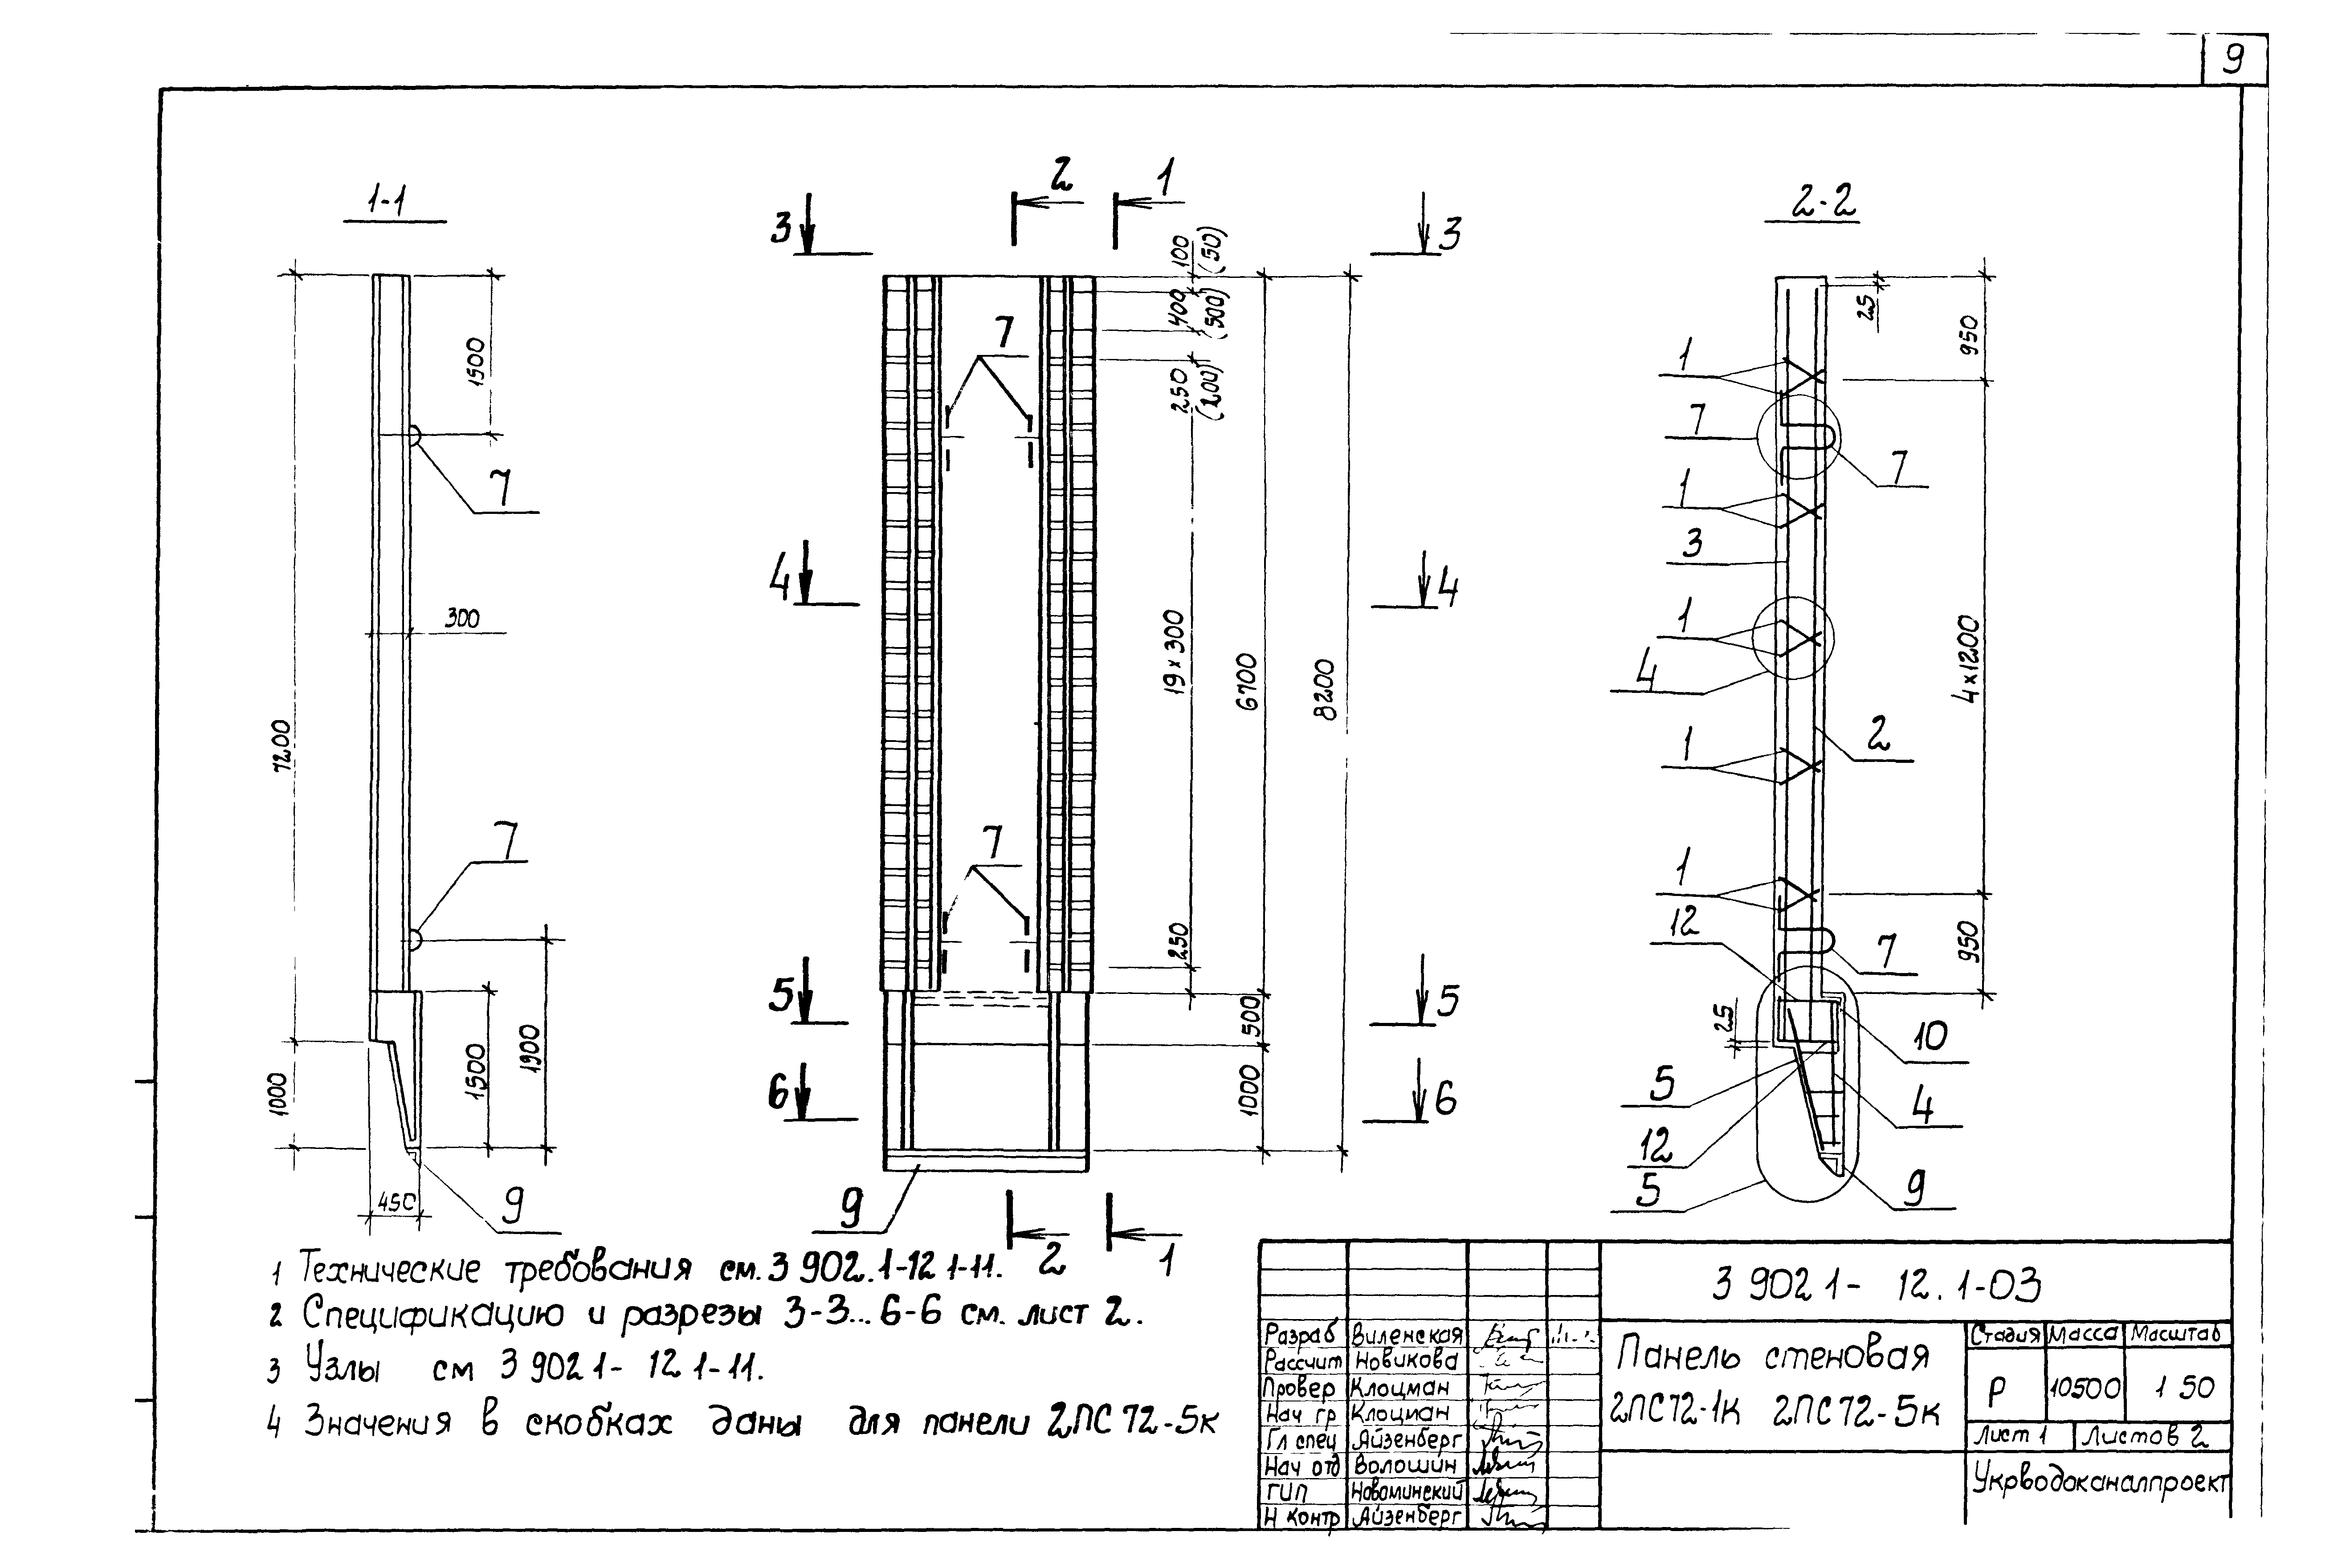 Панель стеновая 2ПС72-5к Серия 3.902.1-12, вып.1